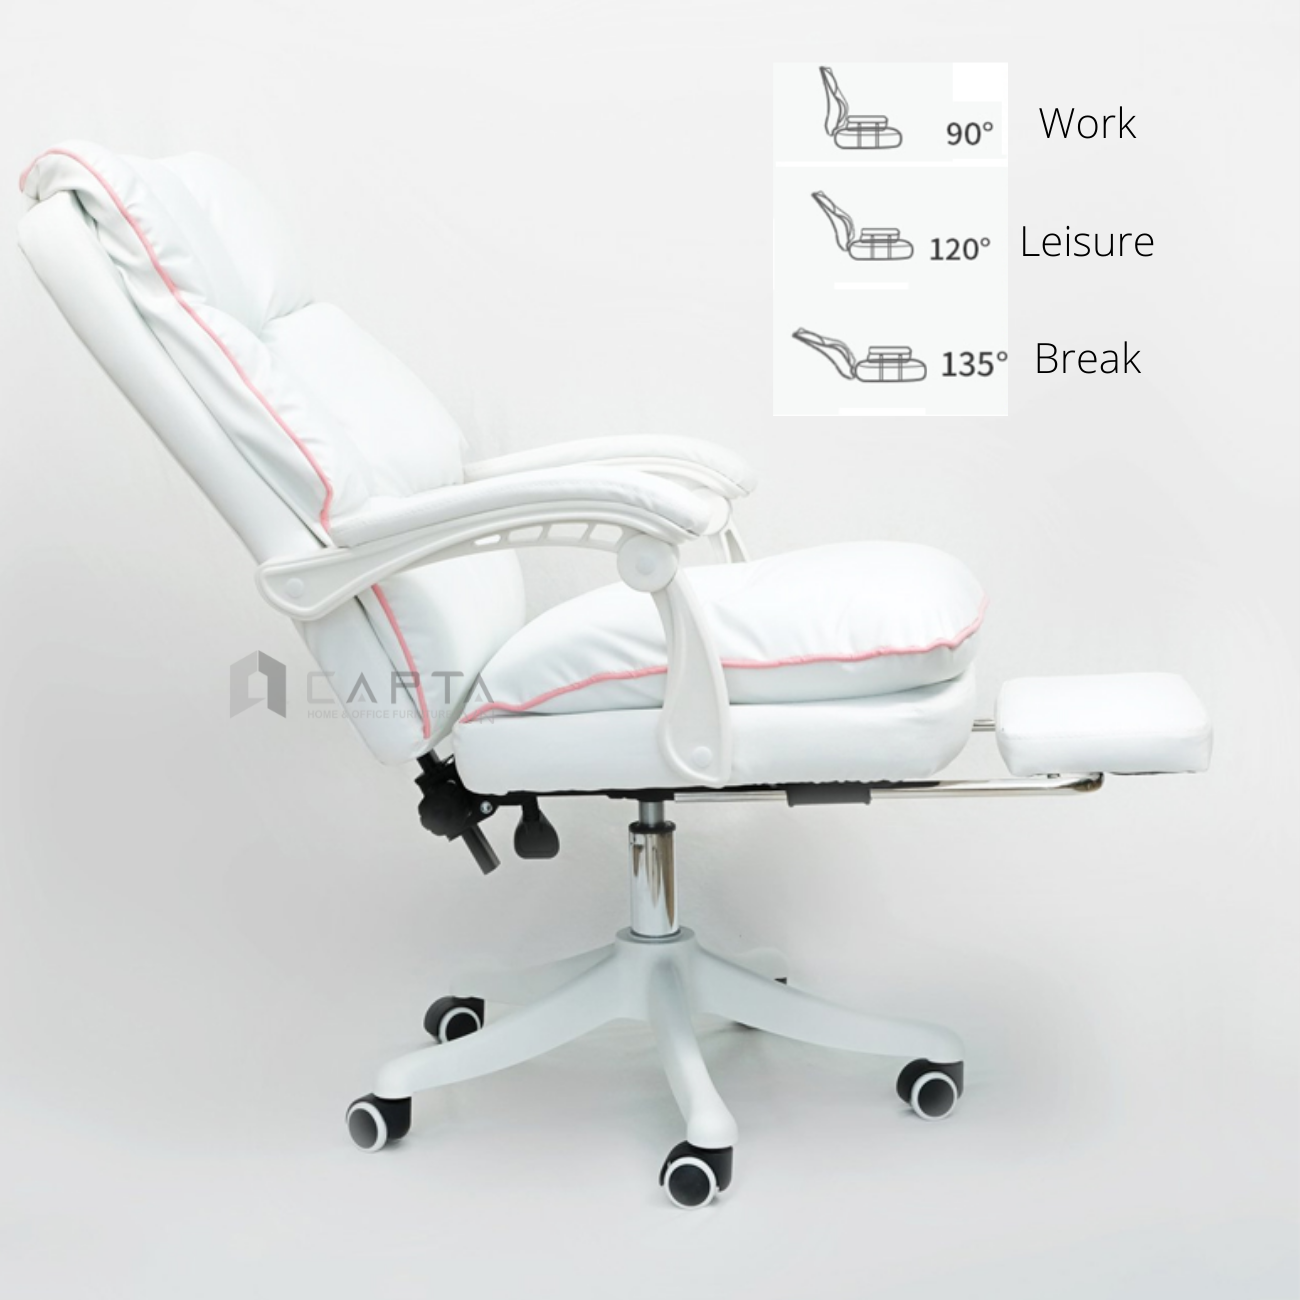 Ghế gaming nữ streamer màu trắng viền hồng Ghế xoay làm việc có gác chân thư giãn CR4104-P  White Gaming Chair - CAPTA